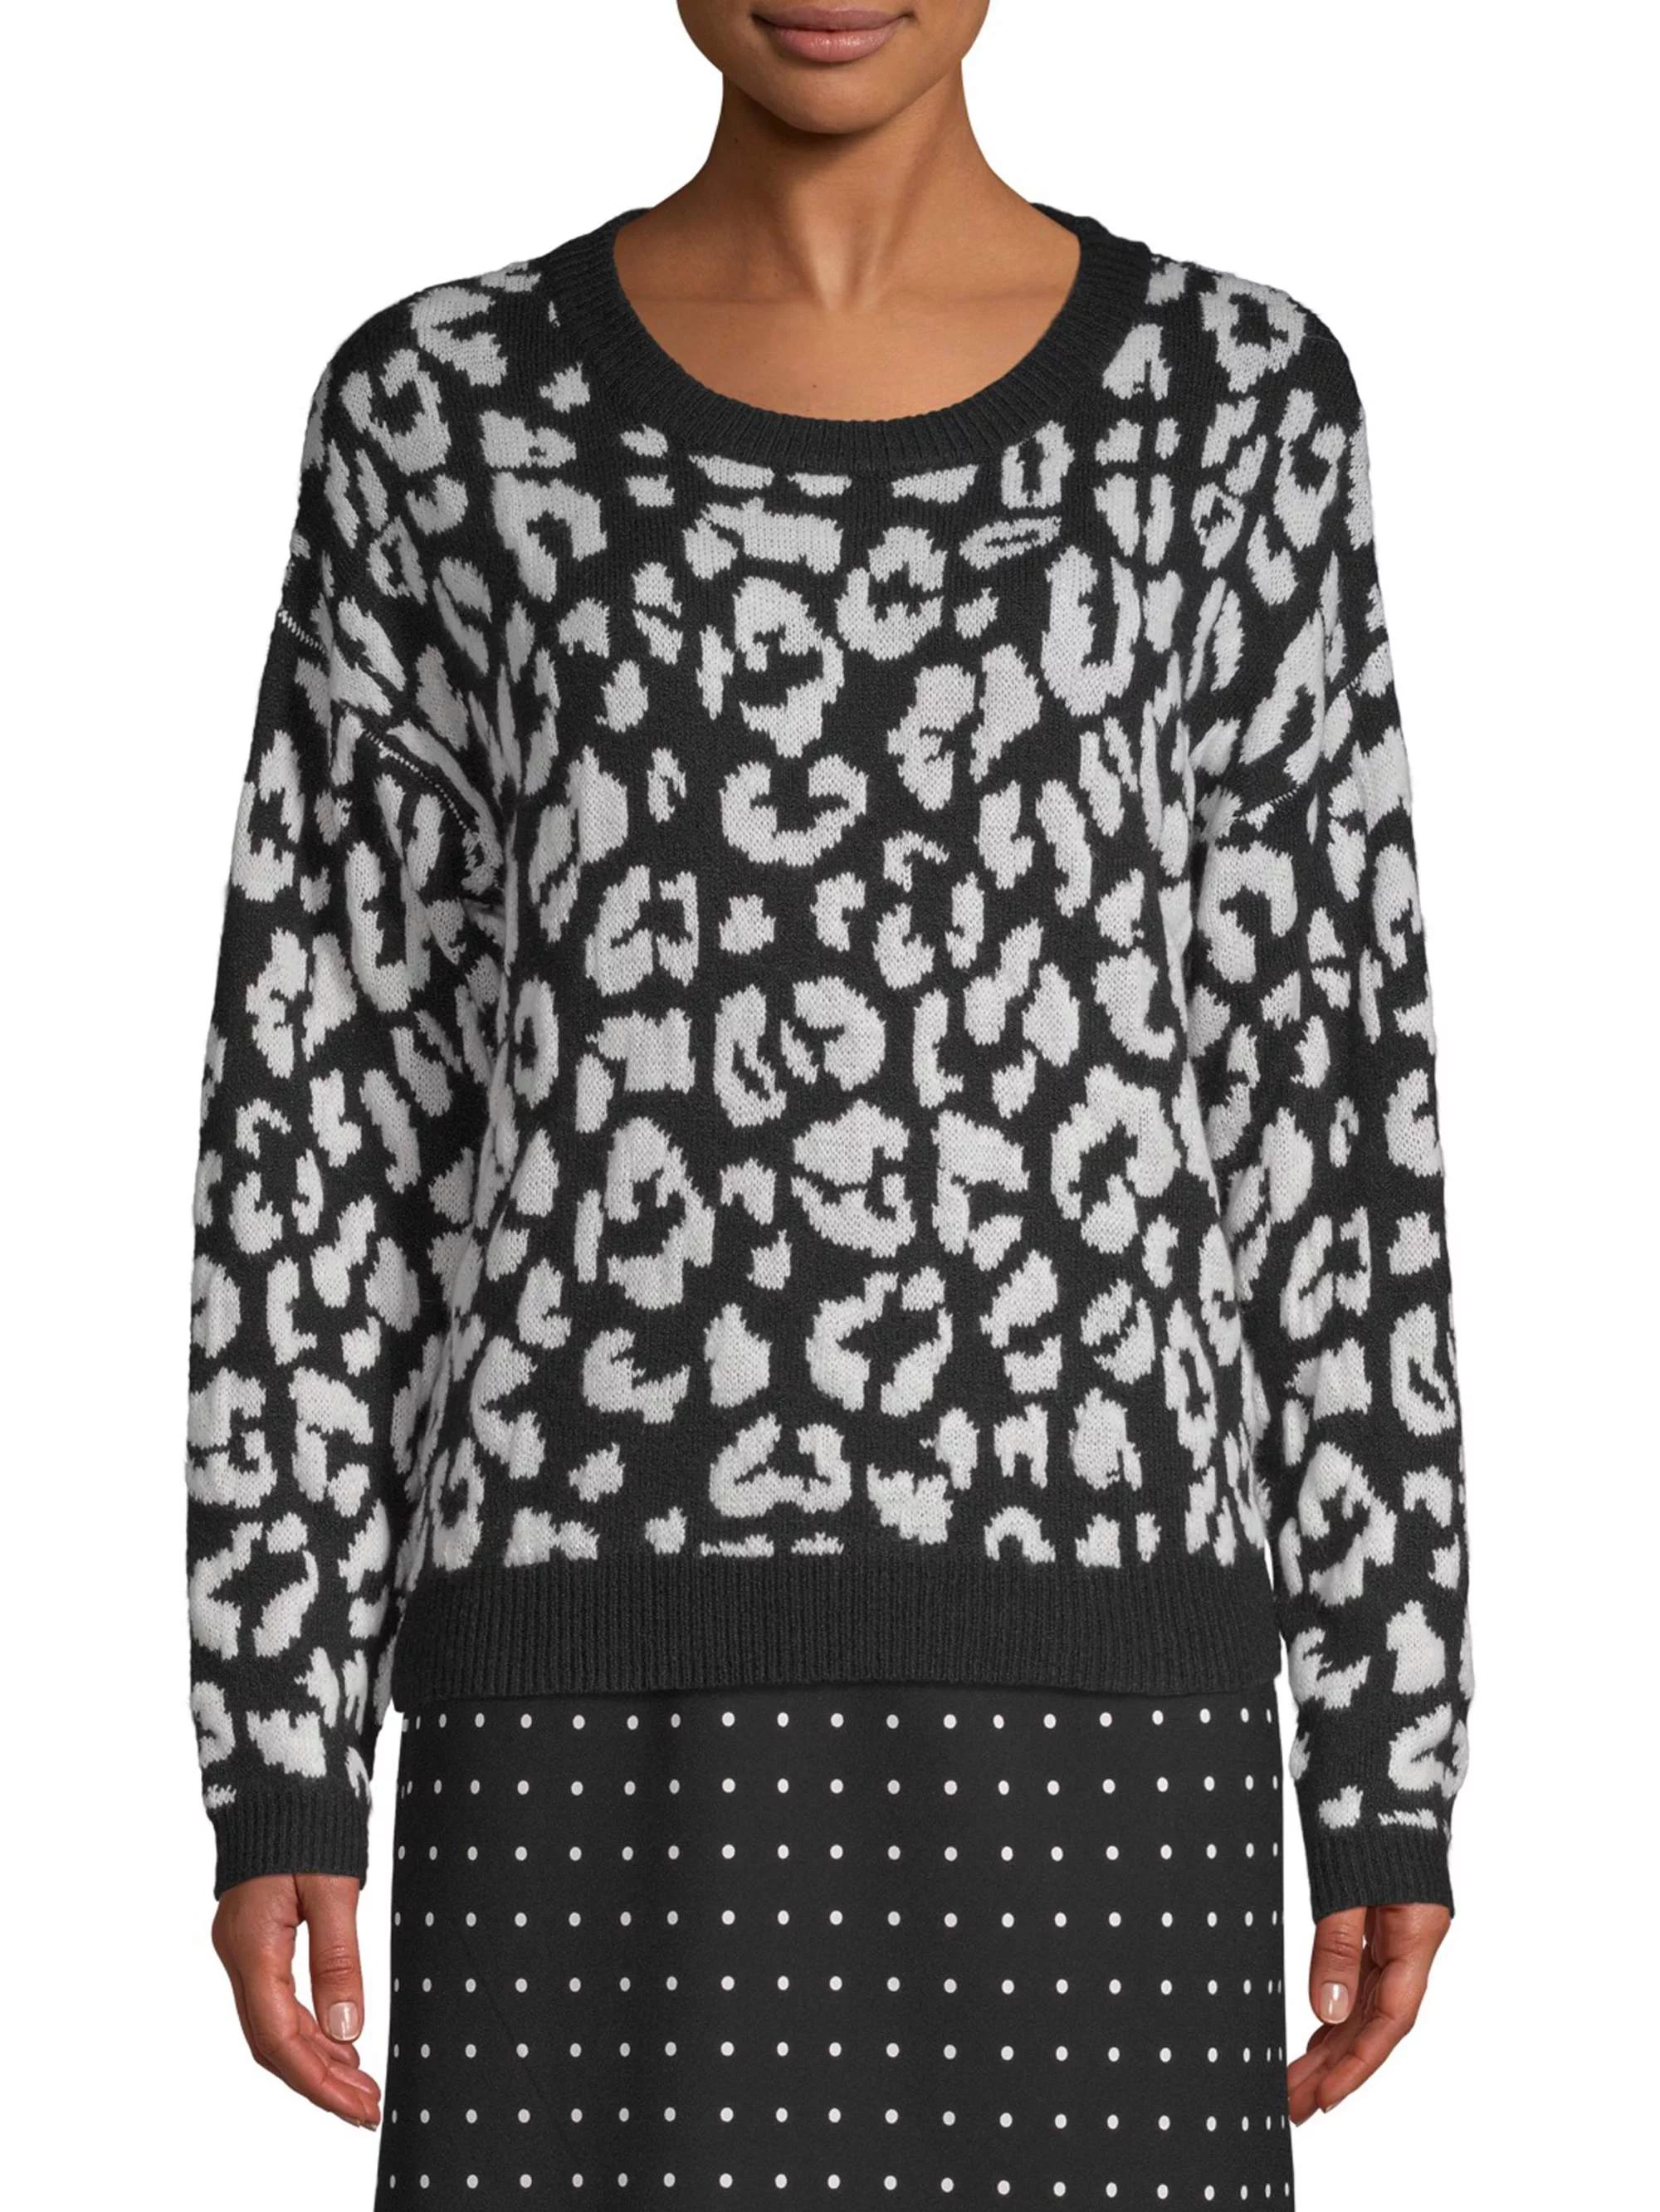 Scoop Leopard Intarsia Crewneck Sweater Women's | Walmart (US)